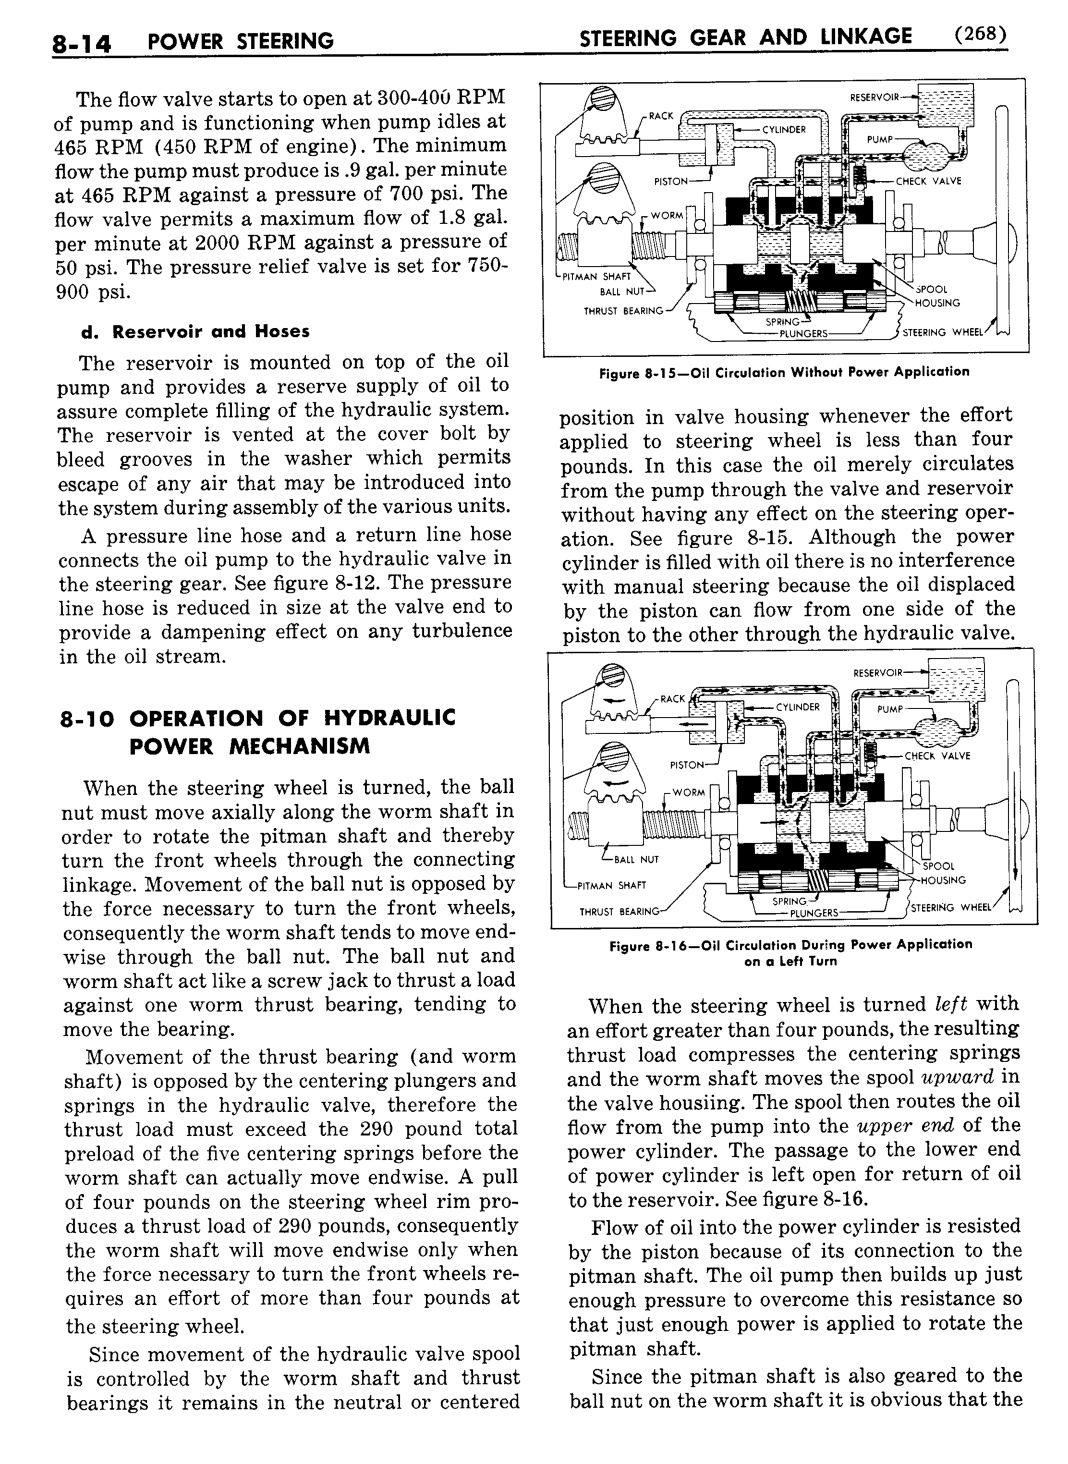 n_09 1954 Buick Shop Manual - Steering-014-014.jpg